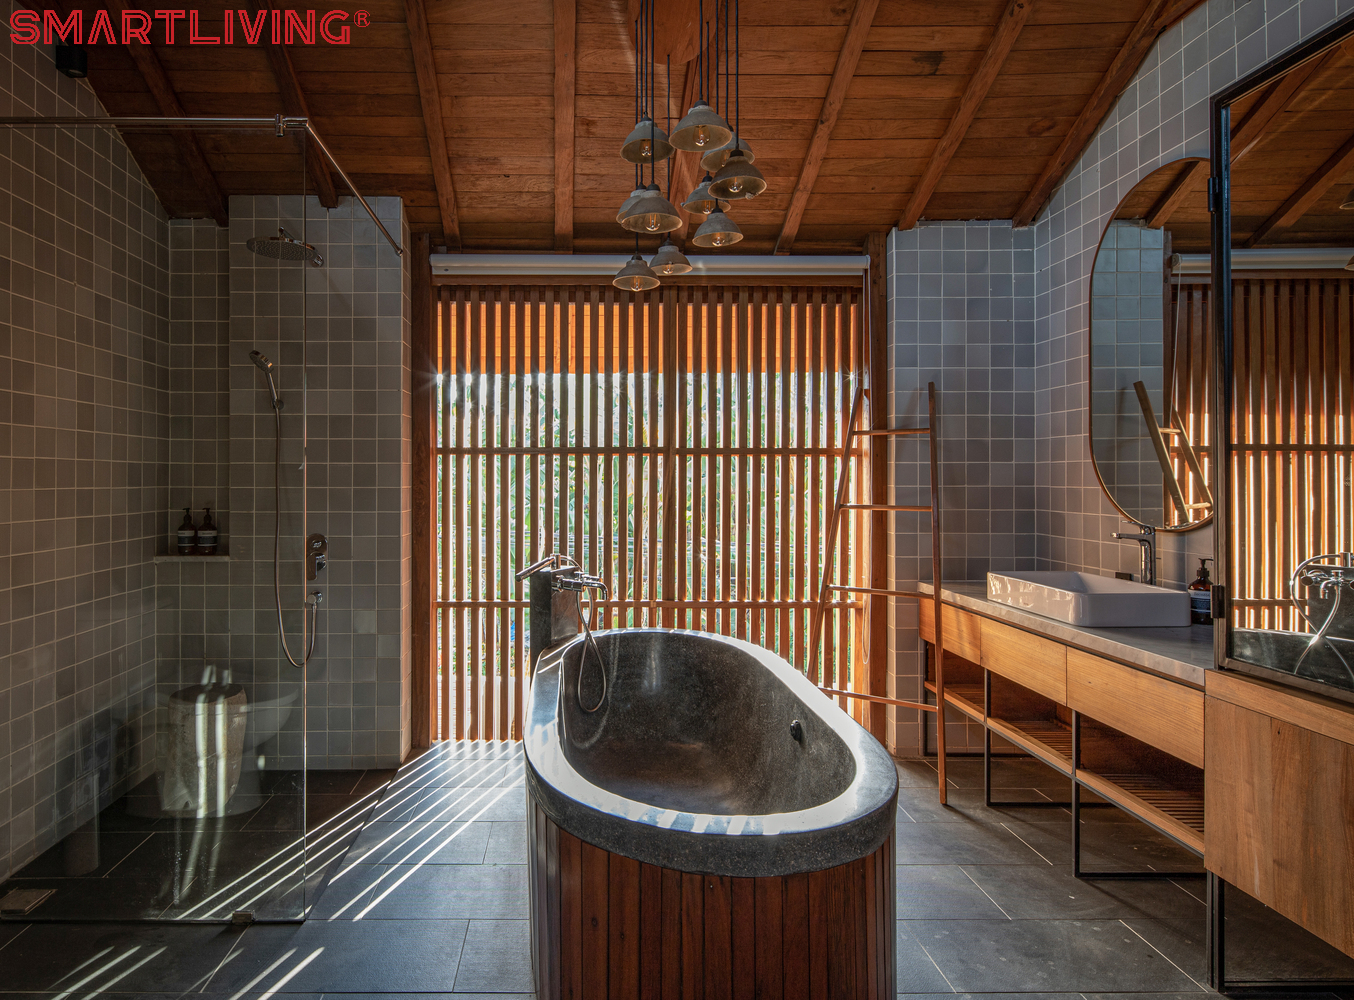 Sử dụng các thiết bị nội thất như hàng rào chắn, kệ rửa, bồn tắm đều được bằng gỗ, tạo cảm giác gần gũi với thiên nhiên, khá giống các thiết kế Nhật Bản